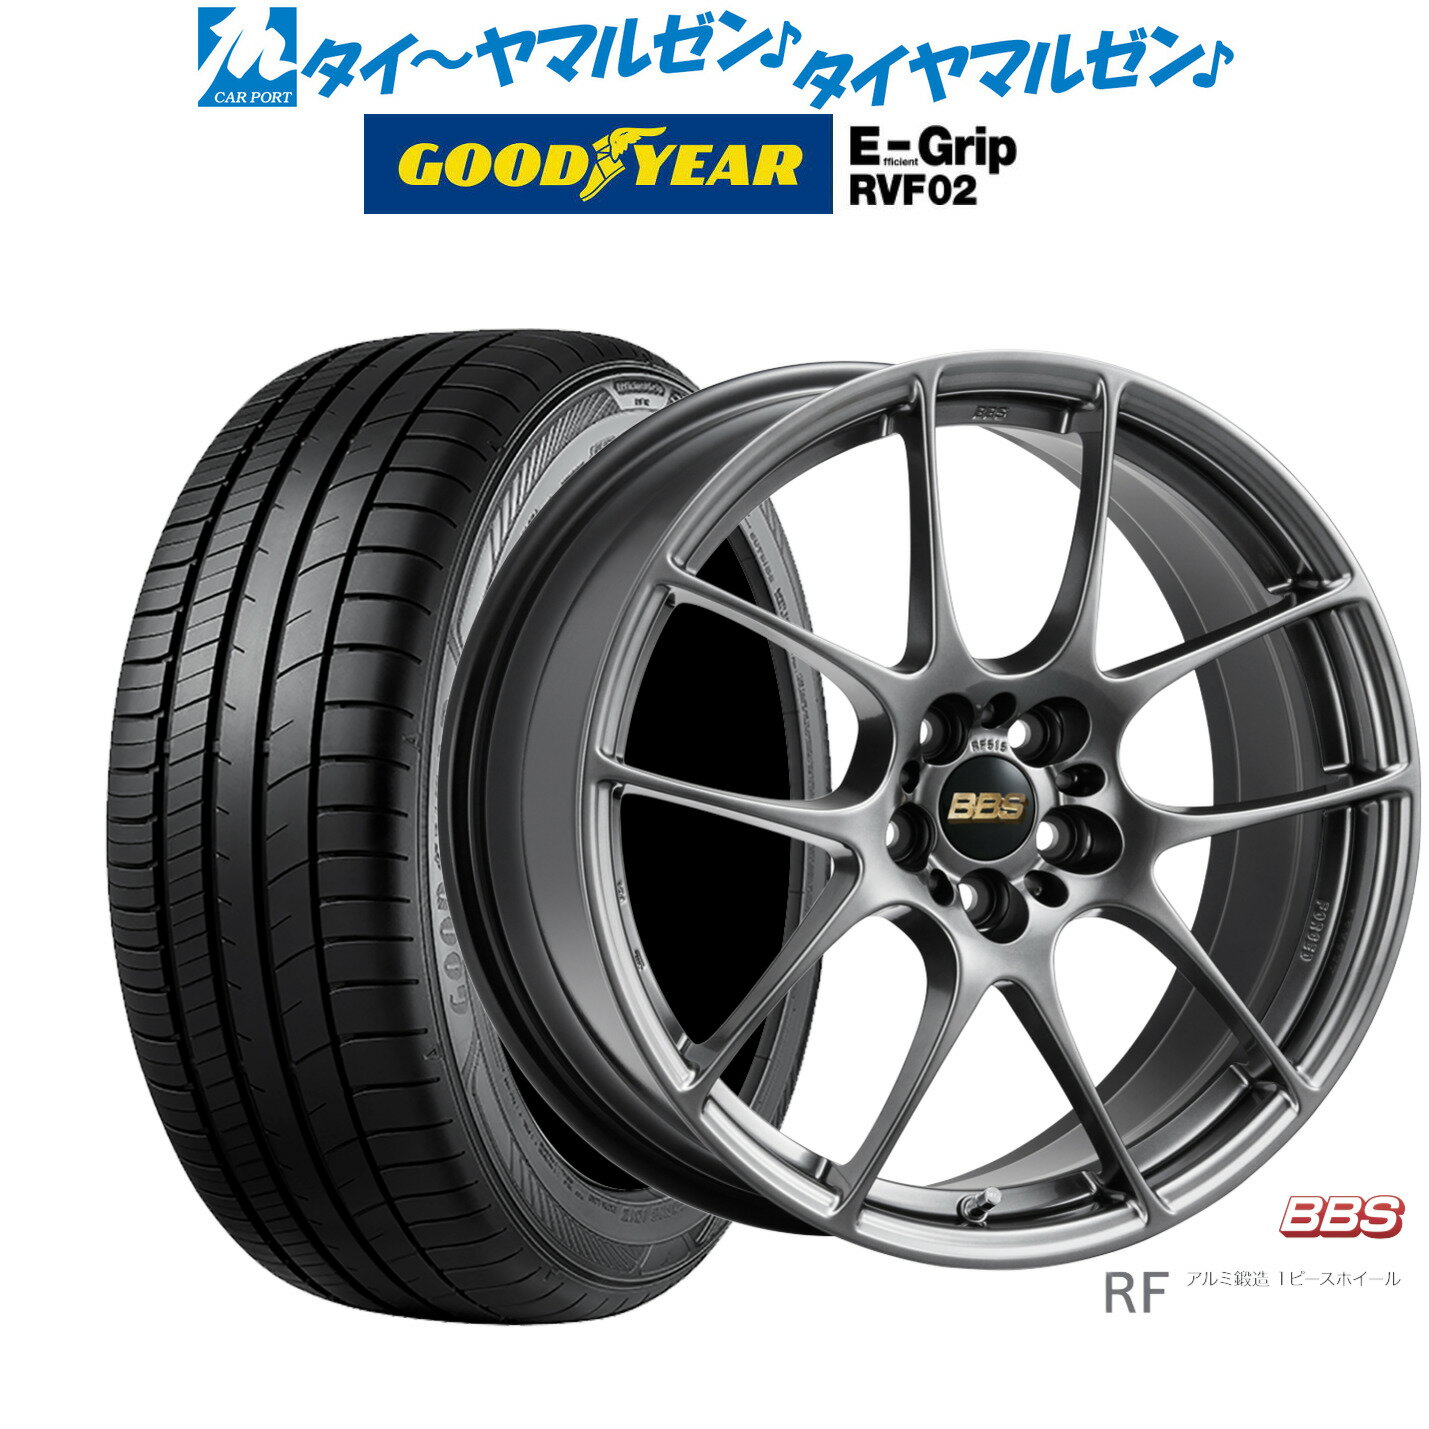 [6/4～10]割引クーポン配布新品 サマータイヤ ホイール4本セットBBS JAPAN RF18インチ 7.5Jグッドイヤー エフィシエント グリップ RVF02225/55R18